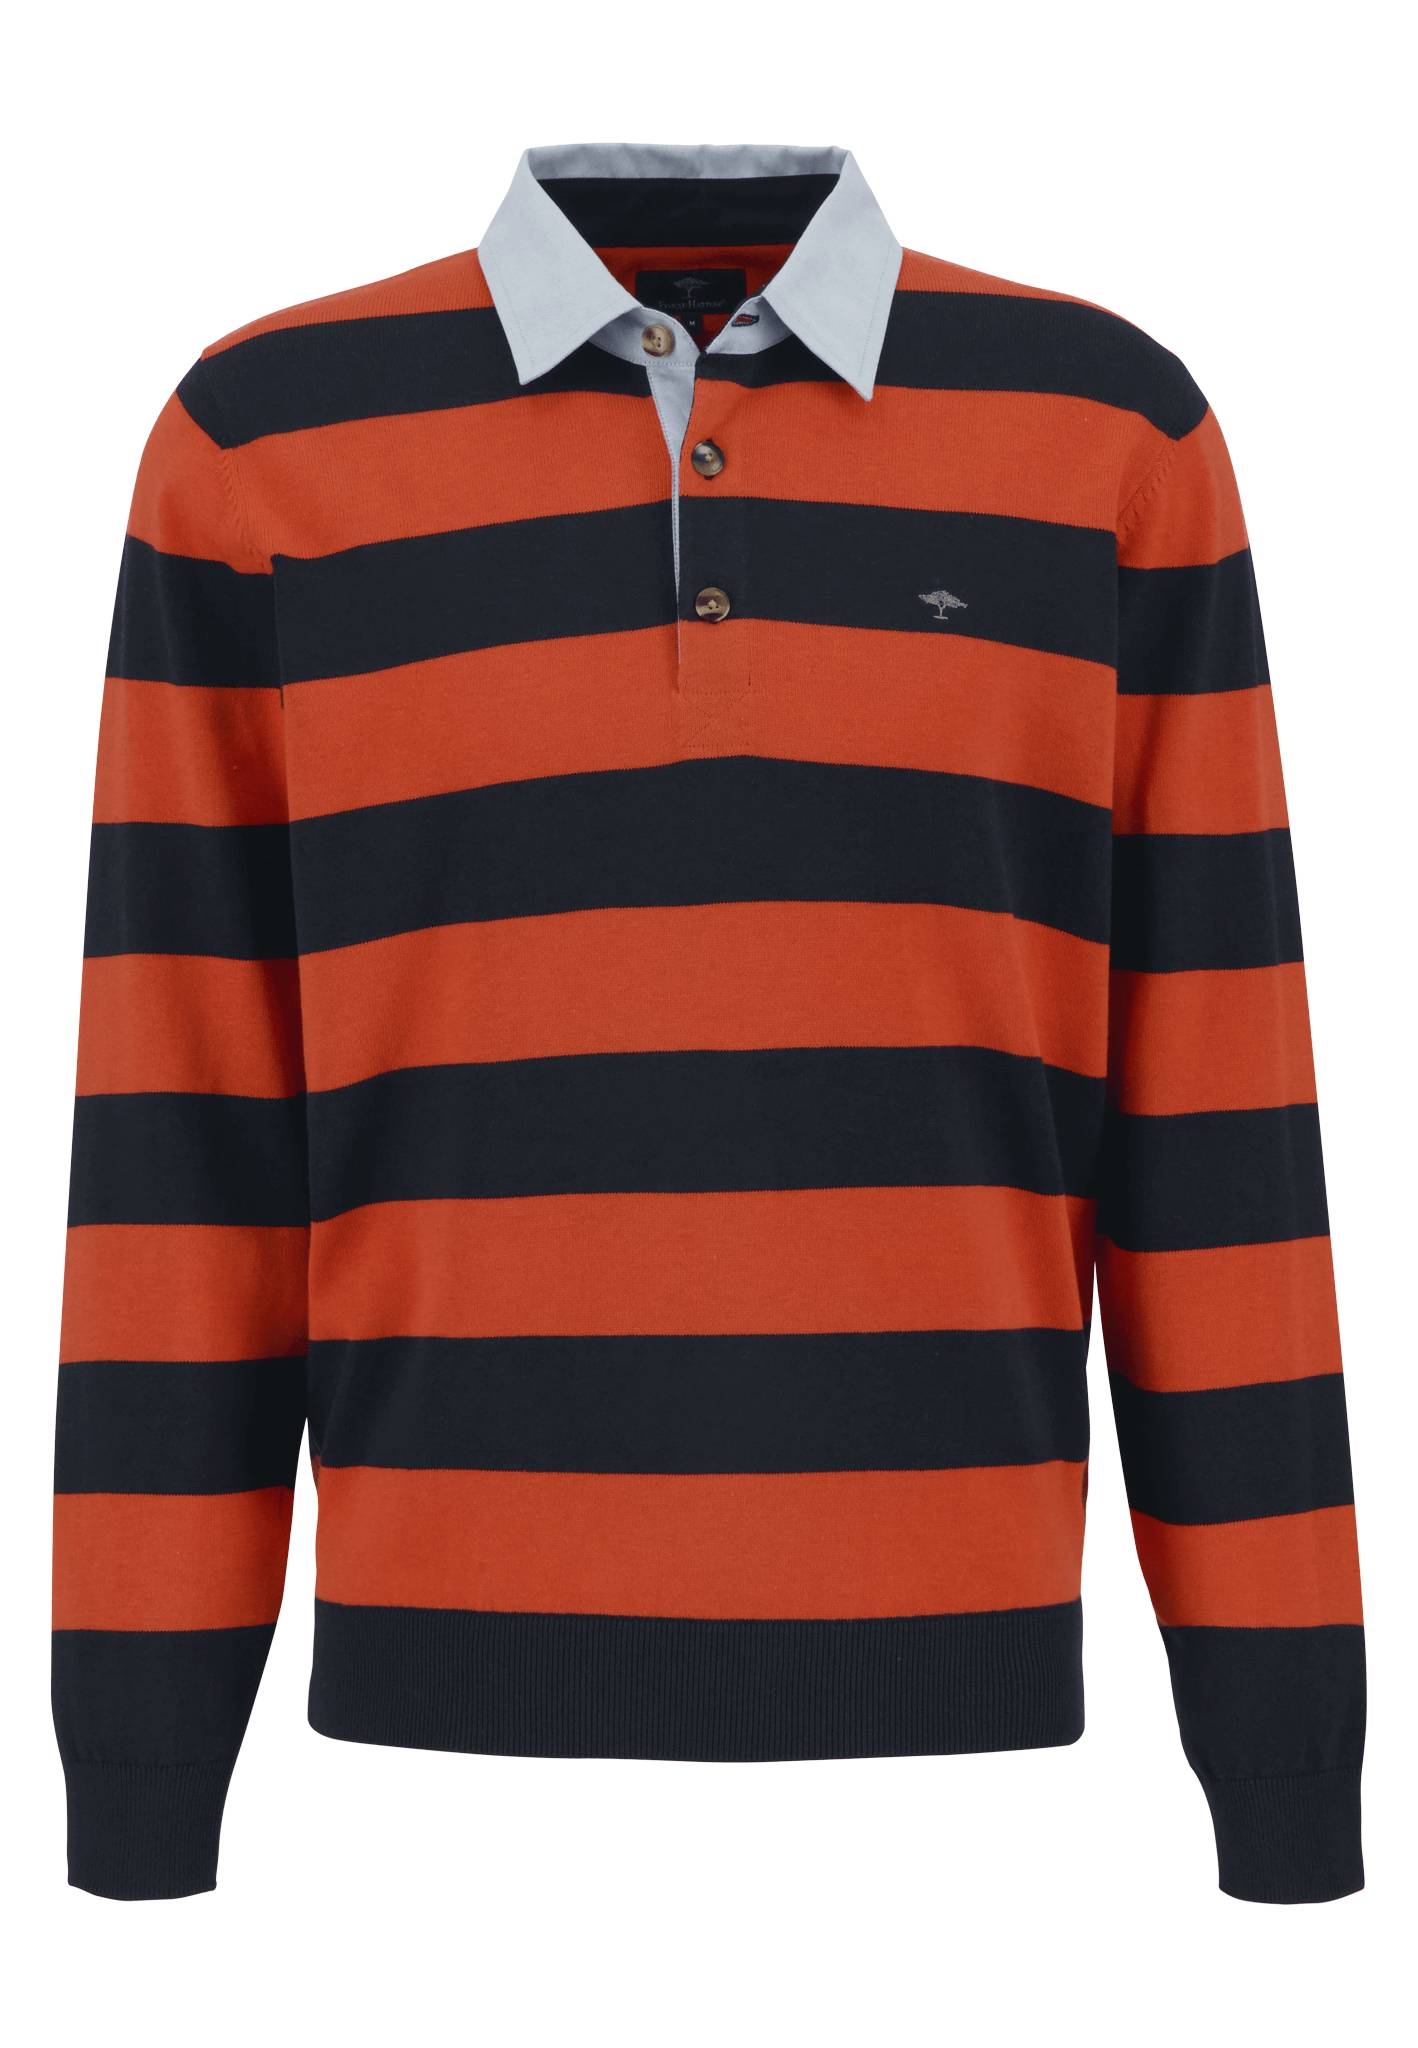 HATTON | 10718015 WÖHRL Strick-Rugby-Shirt FYNCH Gestreift kaufen